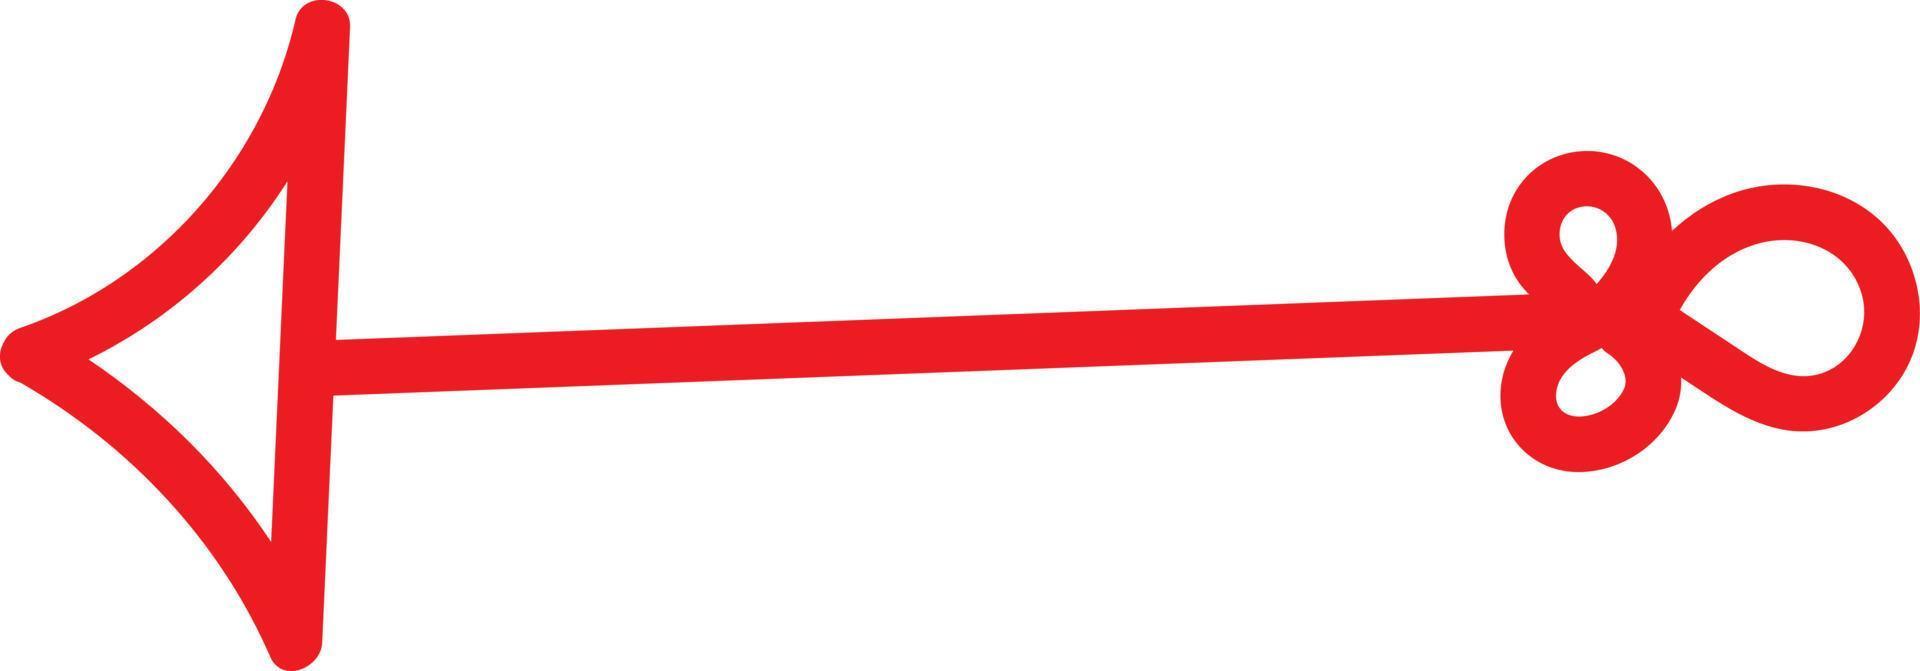 Flèche rouge avec queue inhabituelle pointant vers la gauche, illustration, vecteur sur fond blanc.